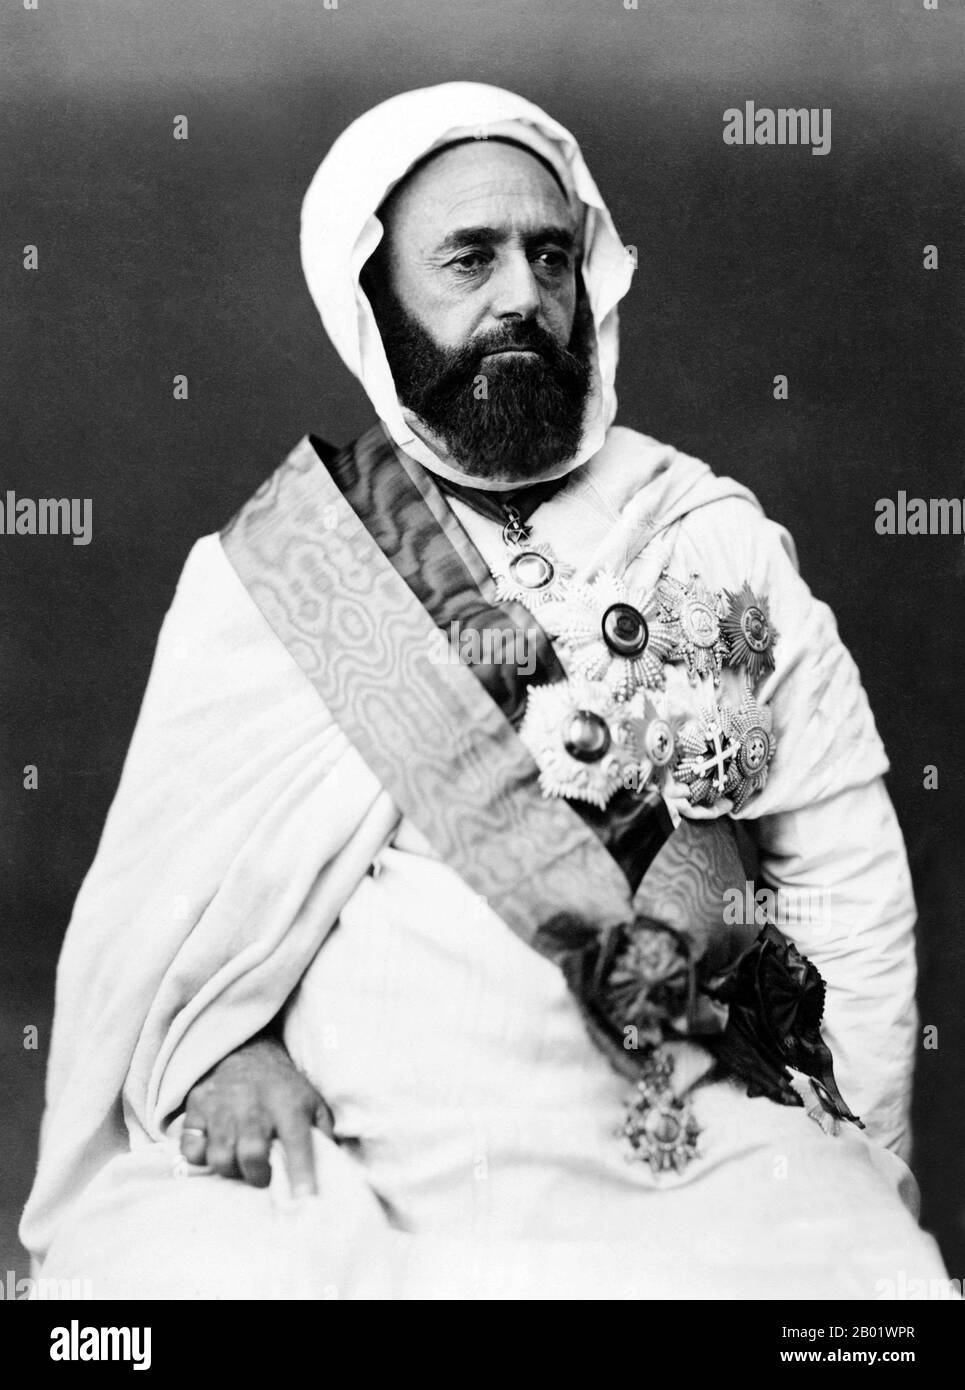 Algeria/Siria: Abdul Qadir ibn Muhyiddin (6 settembre 1808 - 26 maggio 1883), combattente algerino per la libertà, in esilio a Damasco. Foto di Etienne Carjat (1828-1906), c. 1865. Abd El-Kader ibn Muhieddine, noto anche come Emīr Abdelkader o Abd al-Qadir al-Hassani al-Jaza'iri, è stato uno studioso islamico algerino e un leader politico e militare sufi che ha condotto una lotta contro l'invasione francese a metà del XIX secolo, per la quale è visto da alcuni algerini come il loro eroe nazionale. Foto Stock